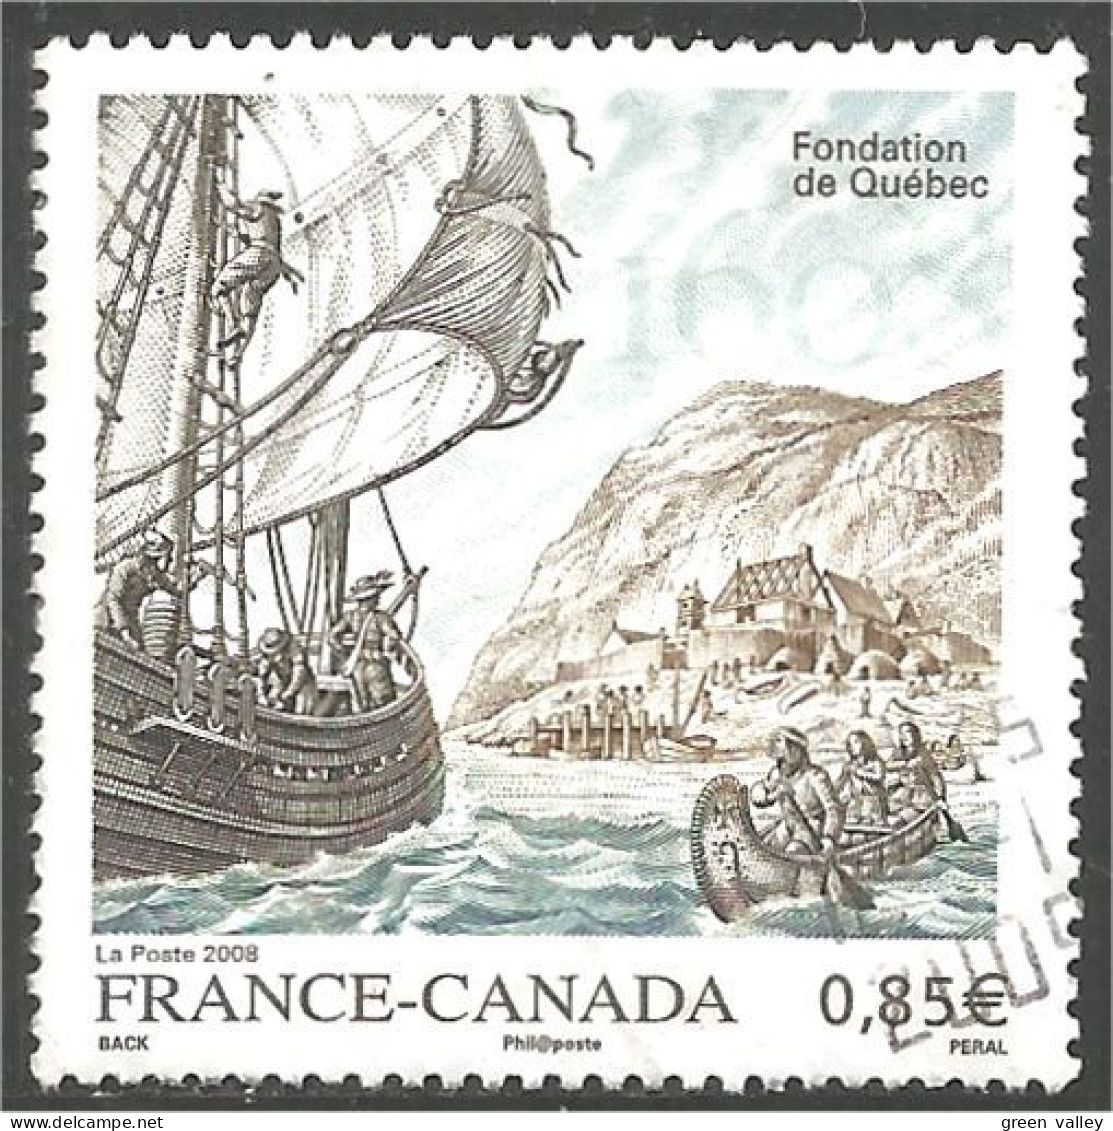 331eu-109 France Fondation Québec Foundation Canot Canoe Indien Indian - Indiens D'Amérique